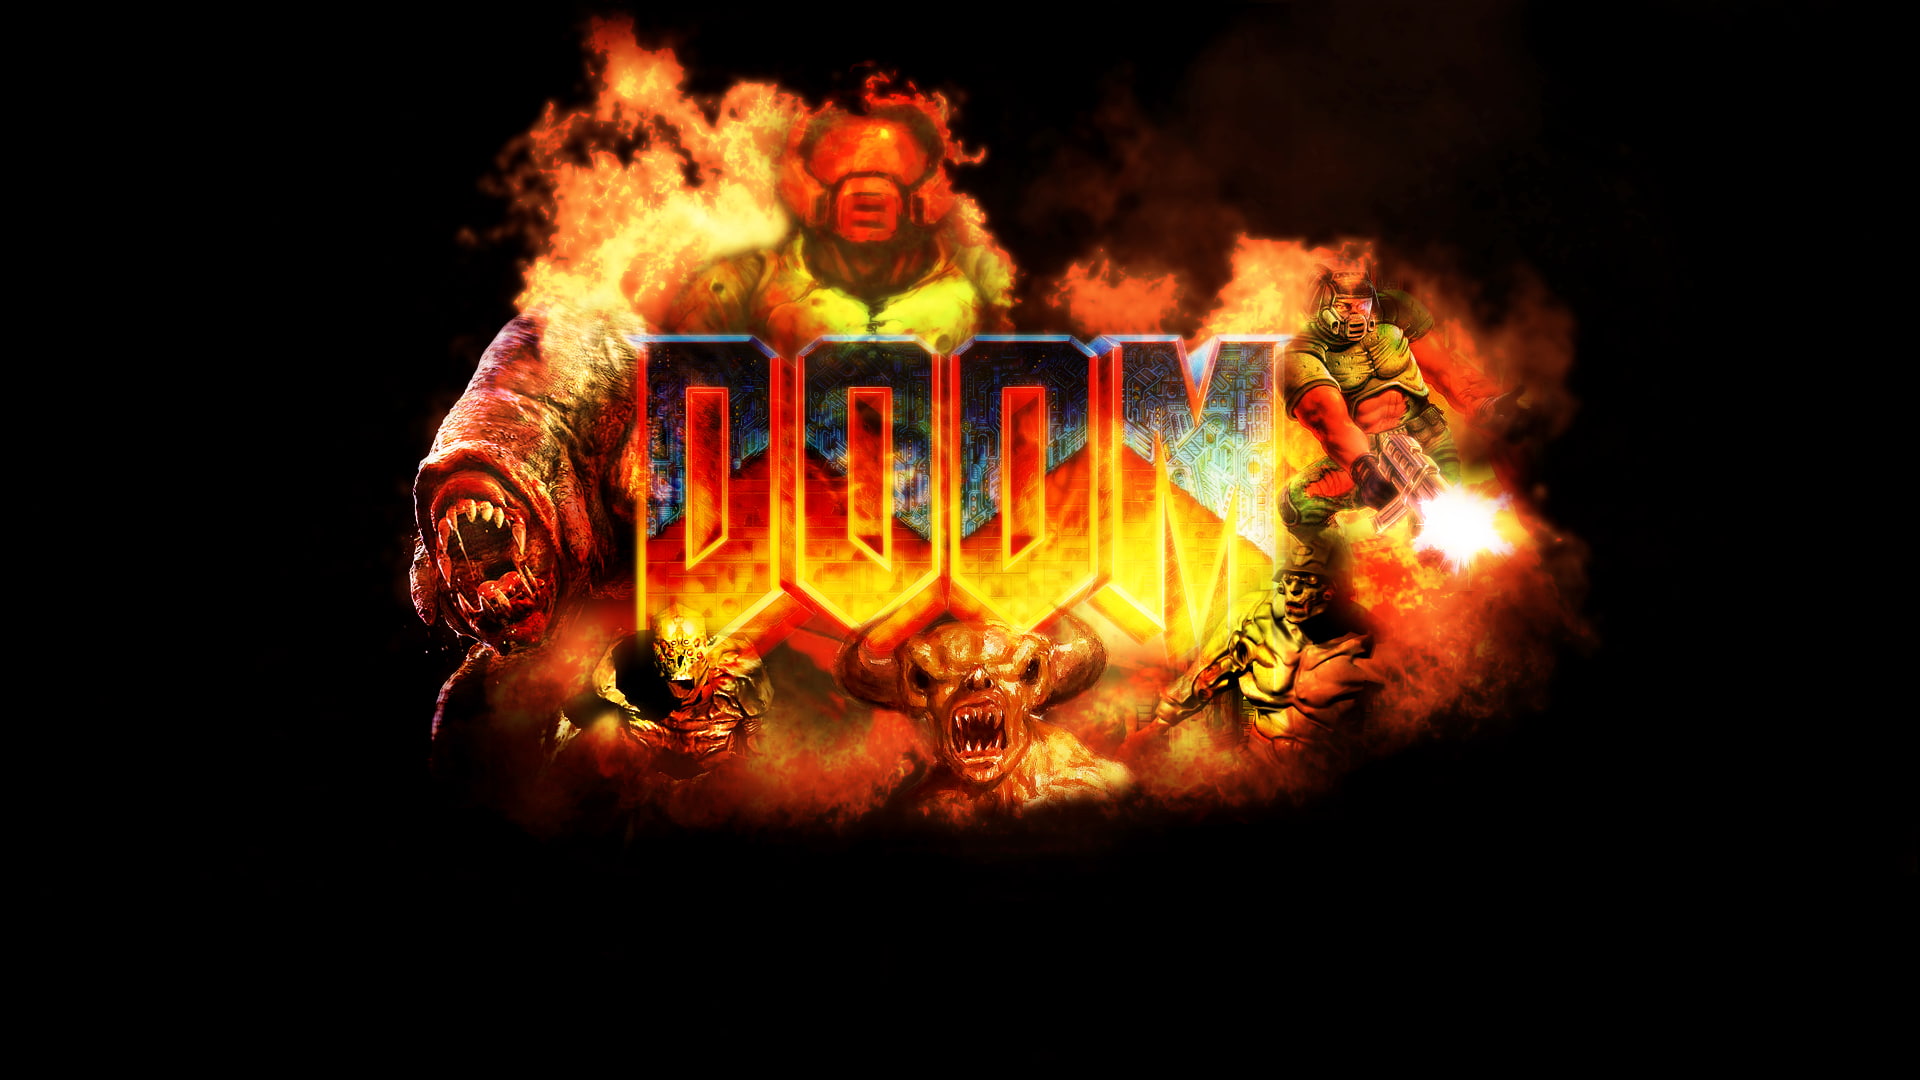 doom illustration, Doom (game), video games, flame, burning, fire